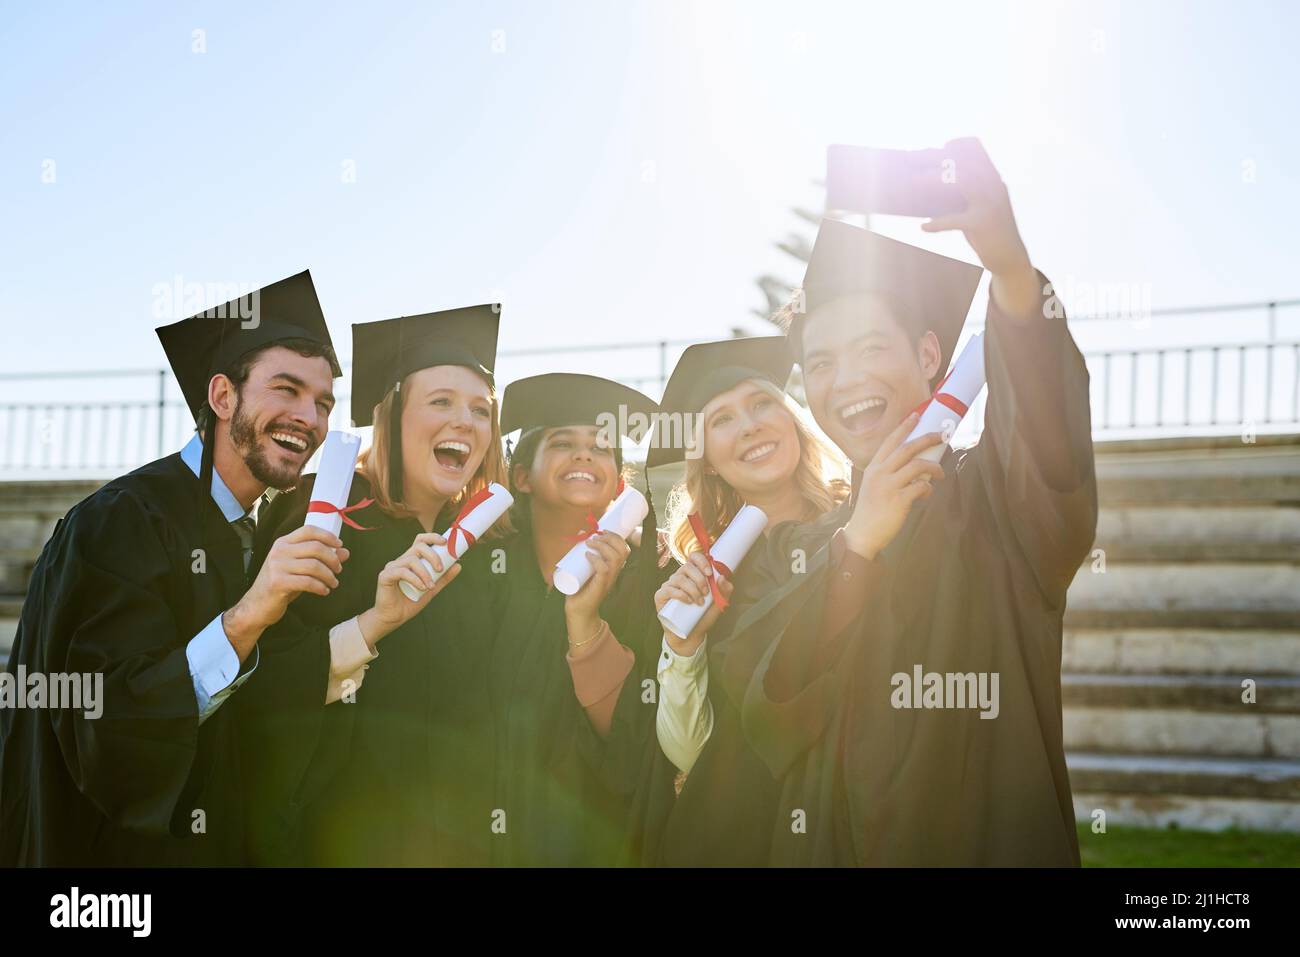 Es ist einer der hellsten Momente, die sie gemeinsam erleben werden. Aufnahme einer Gruppe von Studenten, die am Abschlusstag ein Selfie zusammen machen. Stockfoto